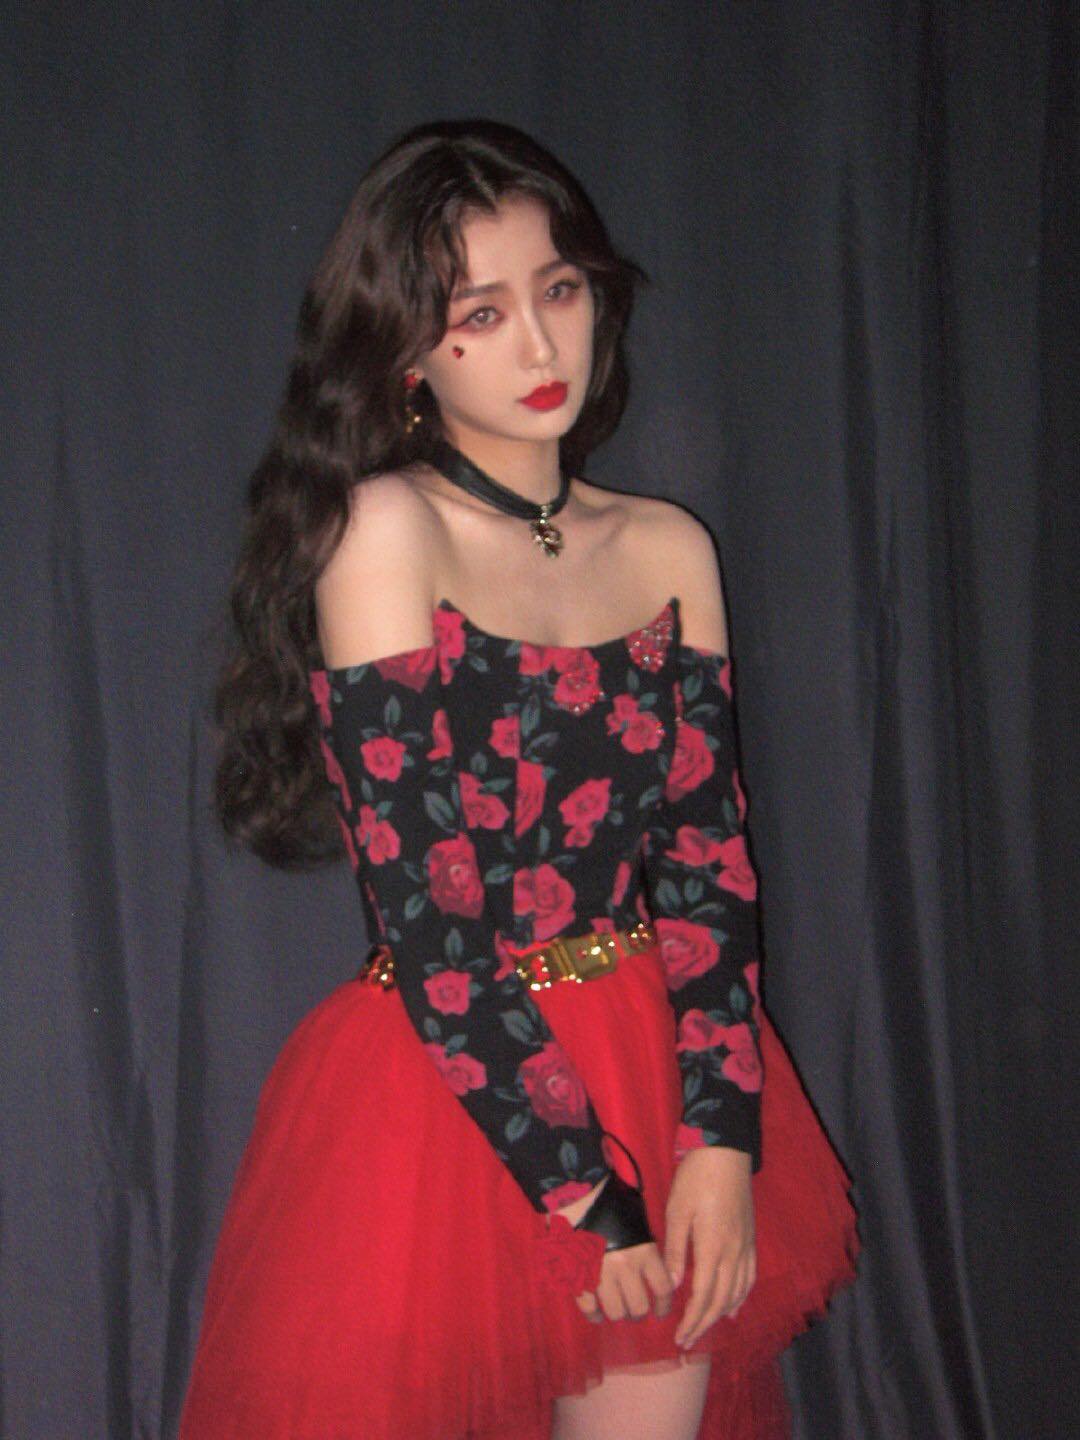 Nữ nghệ sĩ 26 tuổi diện một chiếc váy ống màu đỏ họa tiết hoa hồng trên nền đen